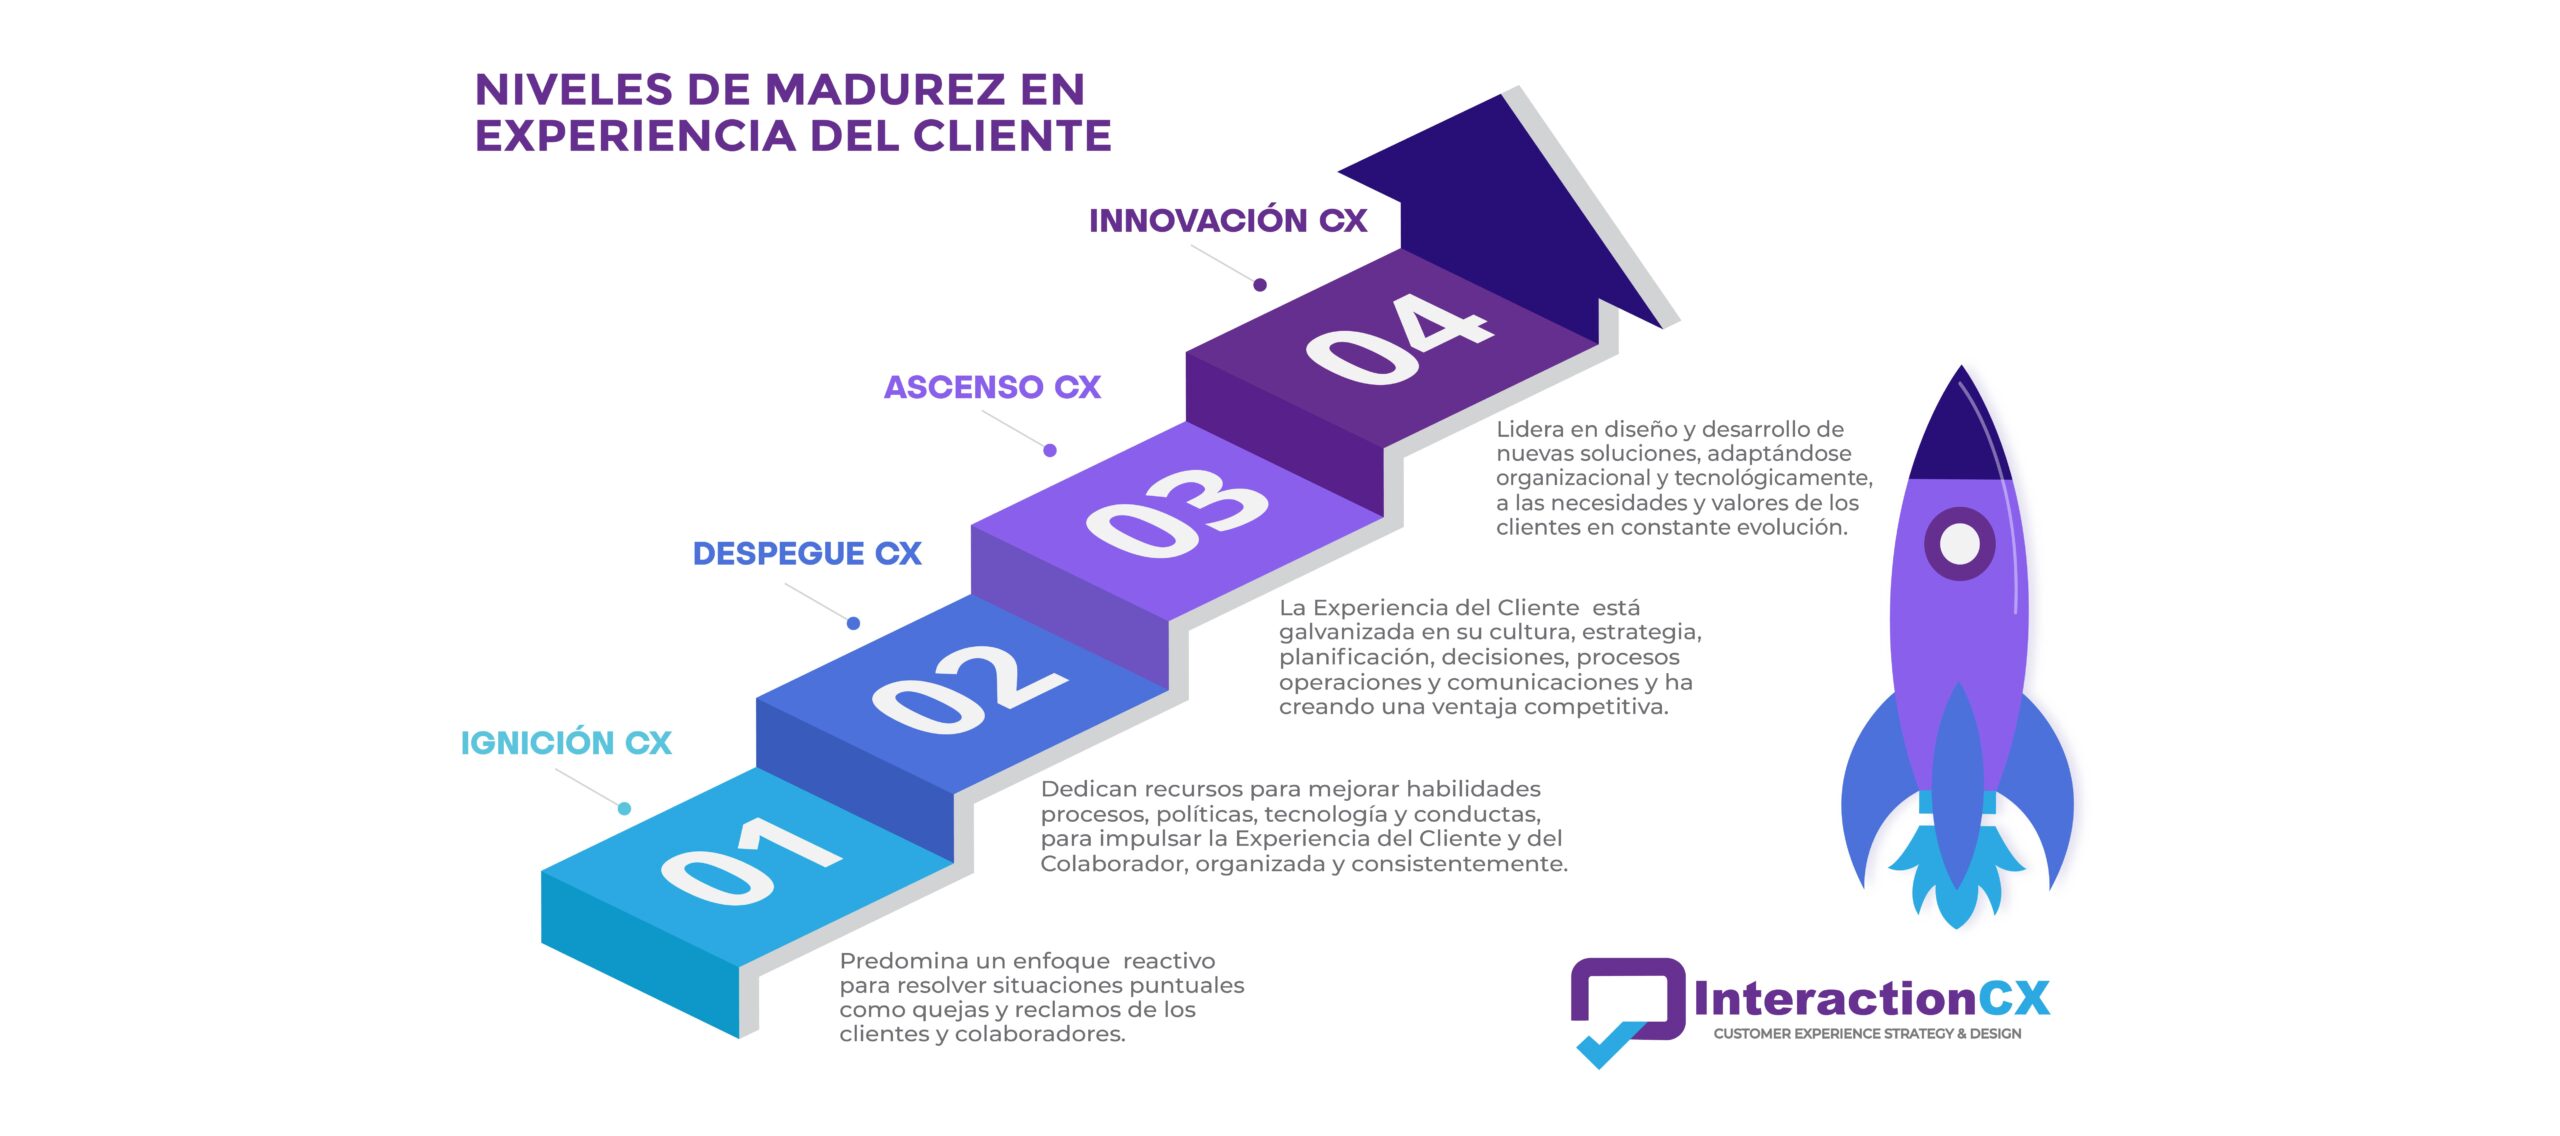 InteractionCX_Niveles_Madurez_DiagnósticoCX